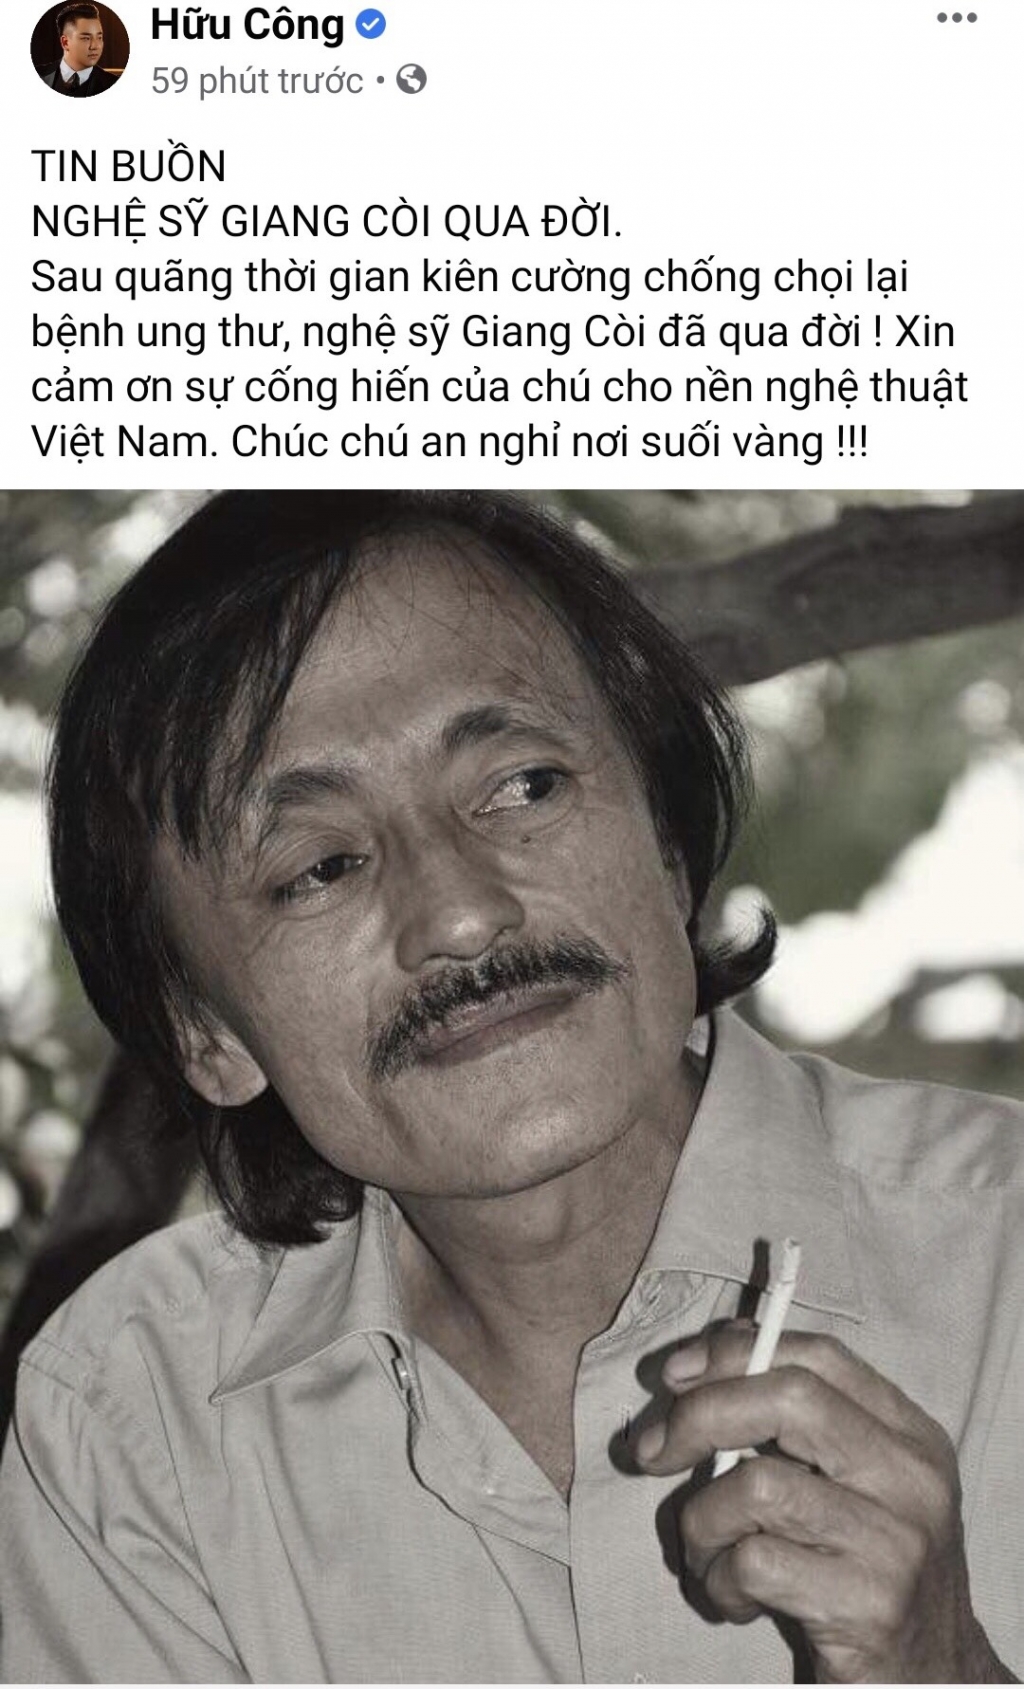 Nghệ sĩ Việt đồng loạt đăng trạng thái bày tỏ tiếc thương về sự ra đi của danh hài Giang Còi